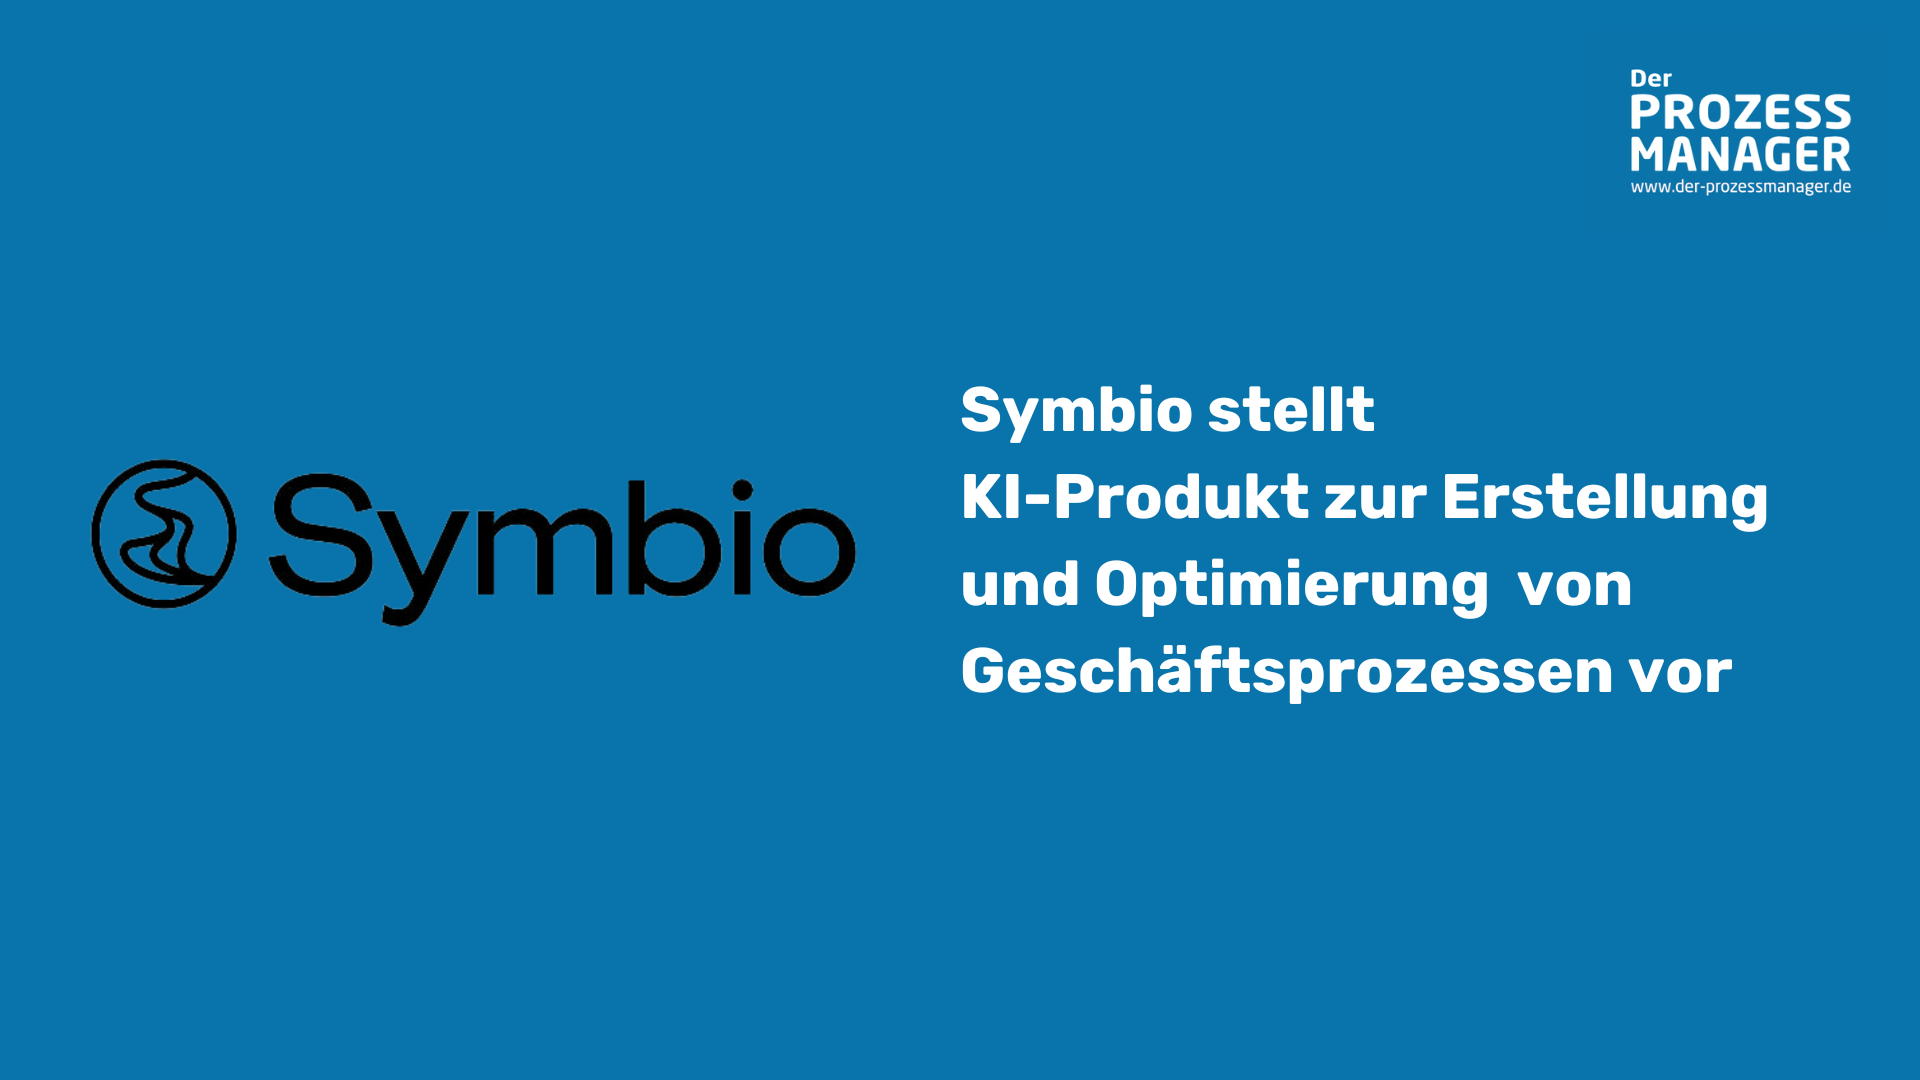 Symbio stellt KI-Produkt zur Erstellung und Optimierung  von Geschäftsprozessen vor